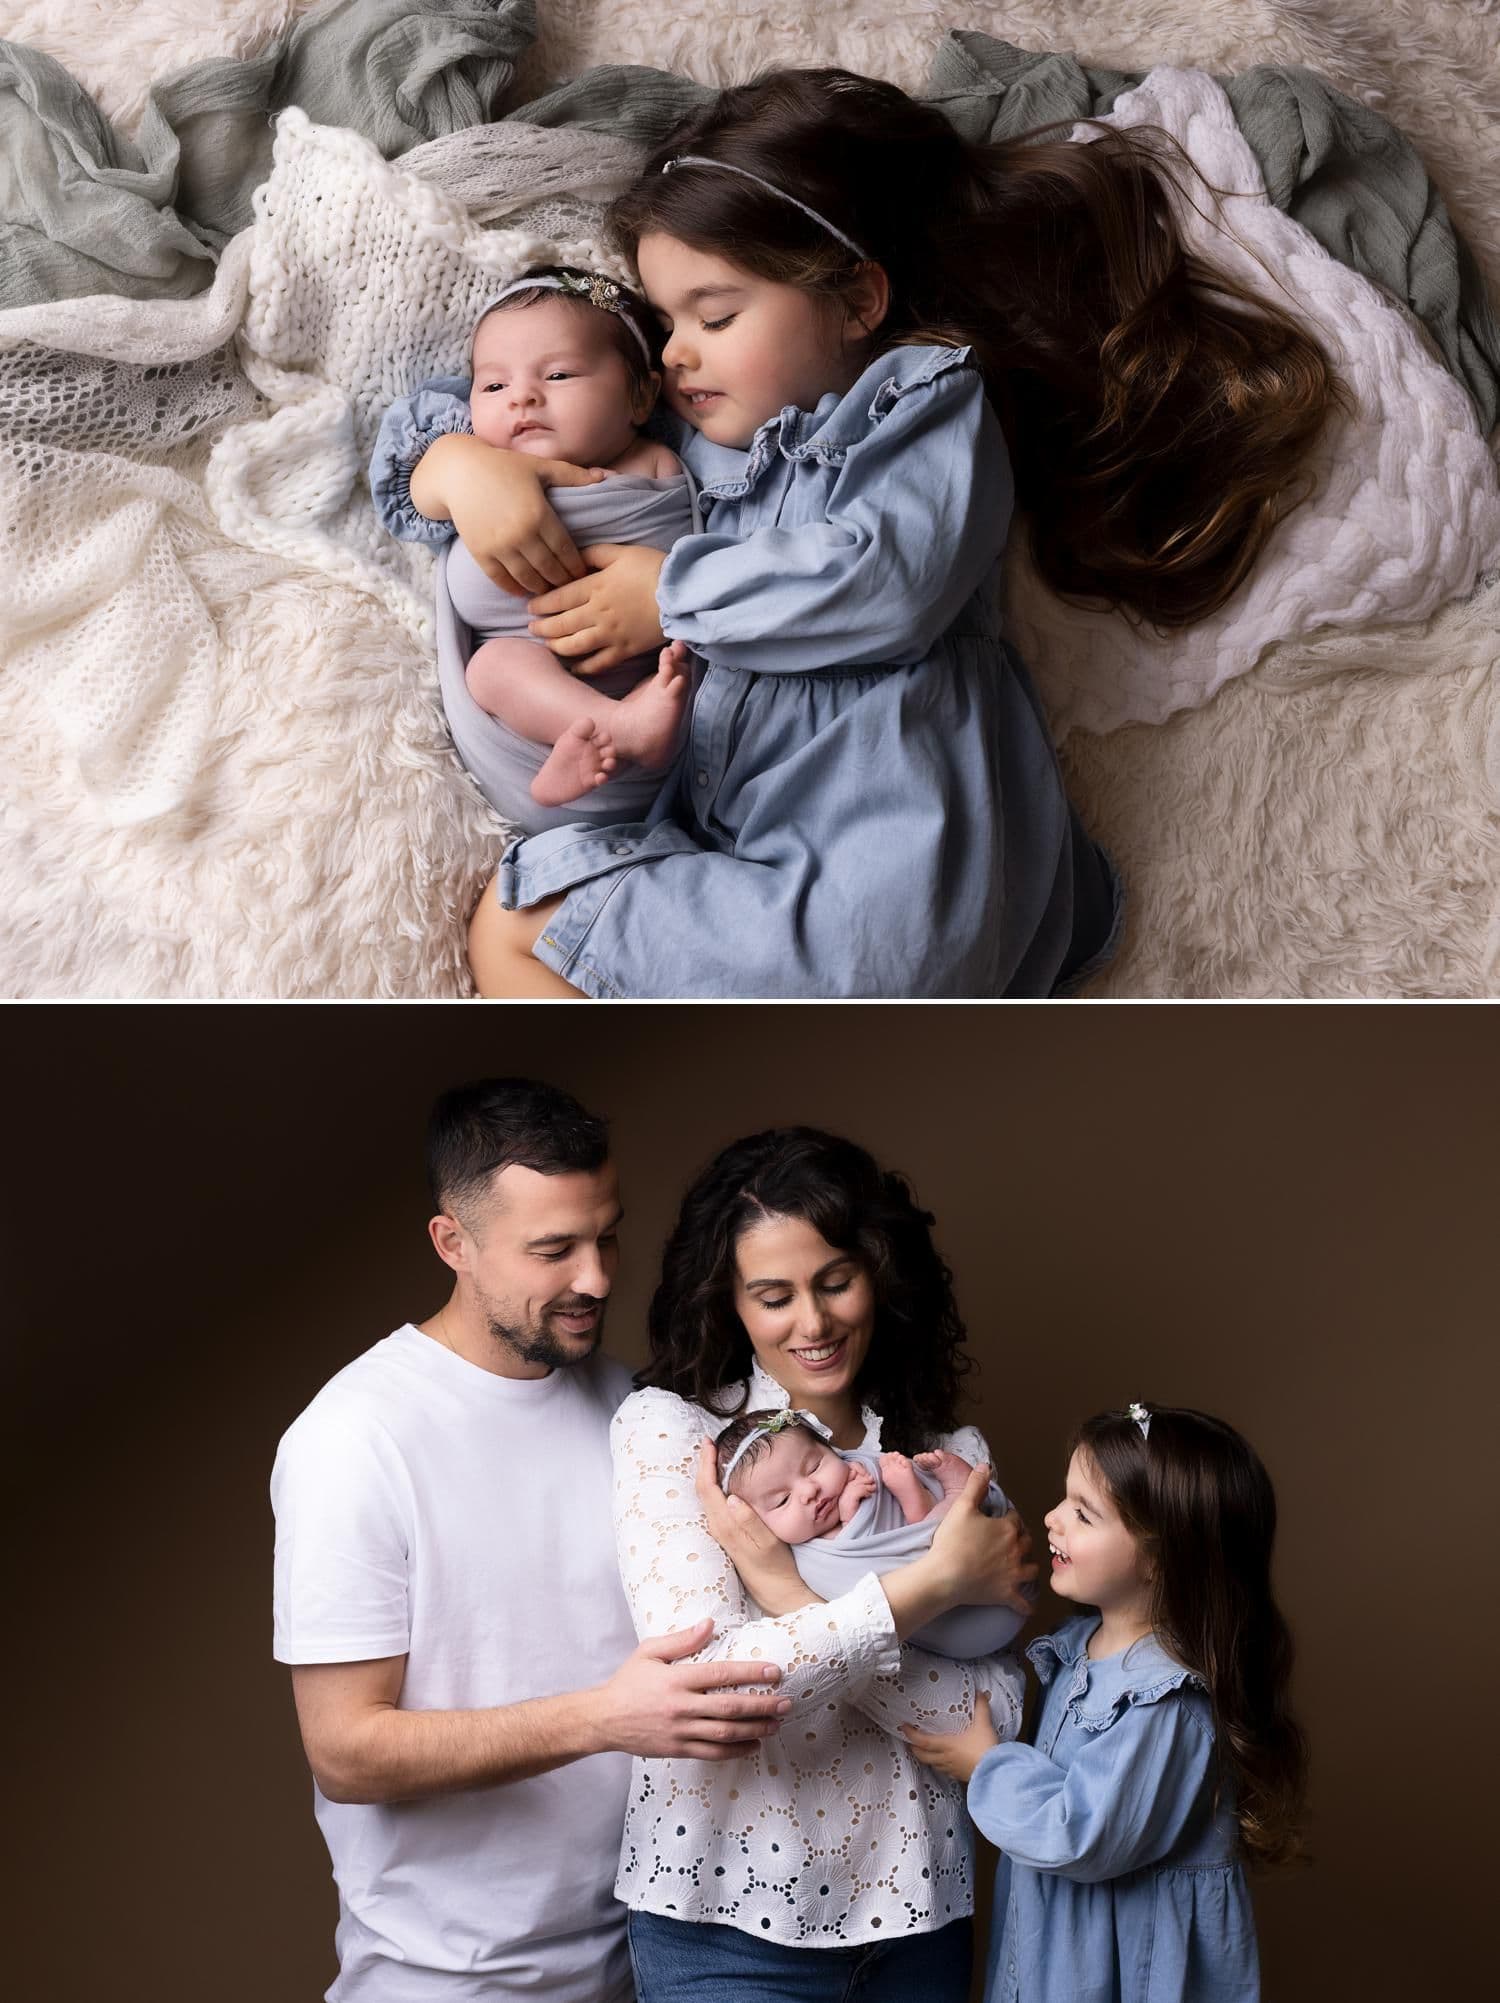 séance photo naissance - 3 raisons de photographier son bébé à la naissance